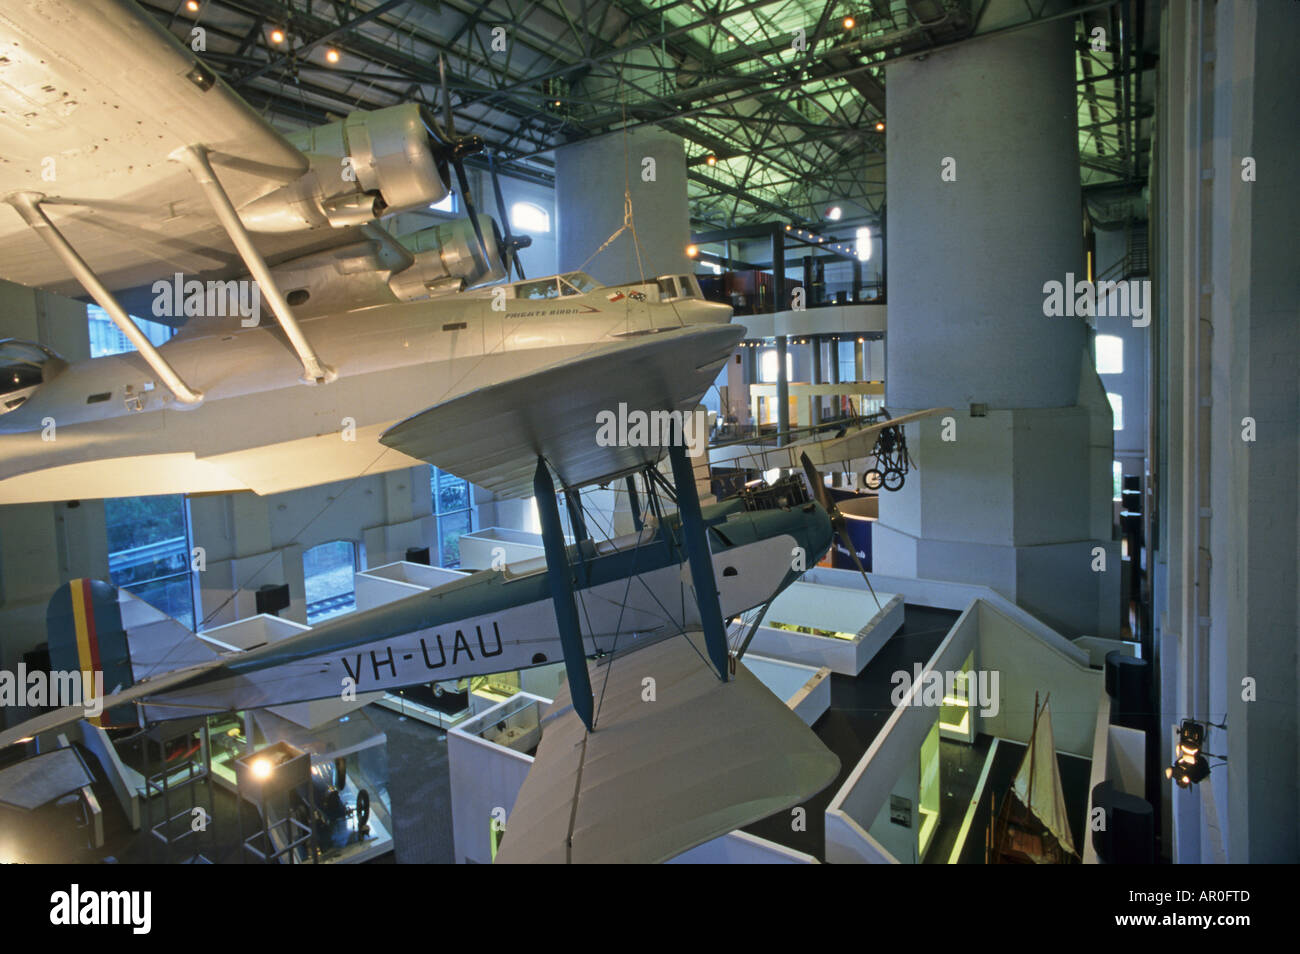 Dans l'aéronef Powerhouse Museum, Sydney, NSW, Australie Powerhouse Museum, Ultimo, expositions et réalisations inventions australienne Banque D'Images